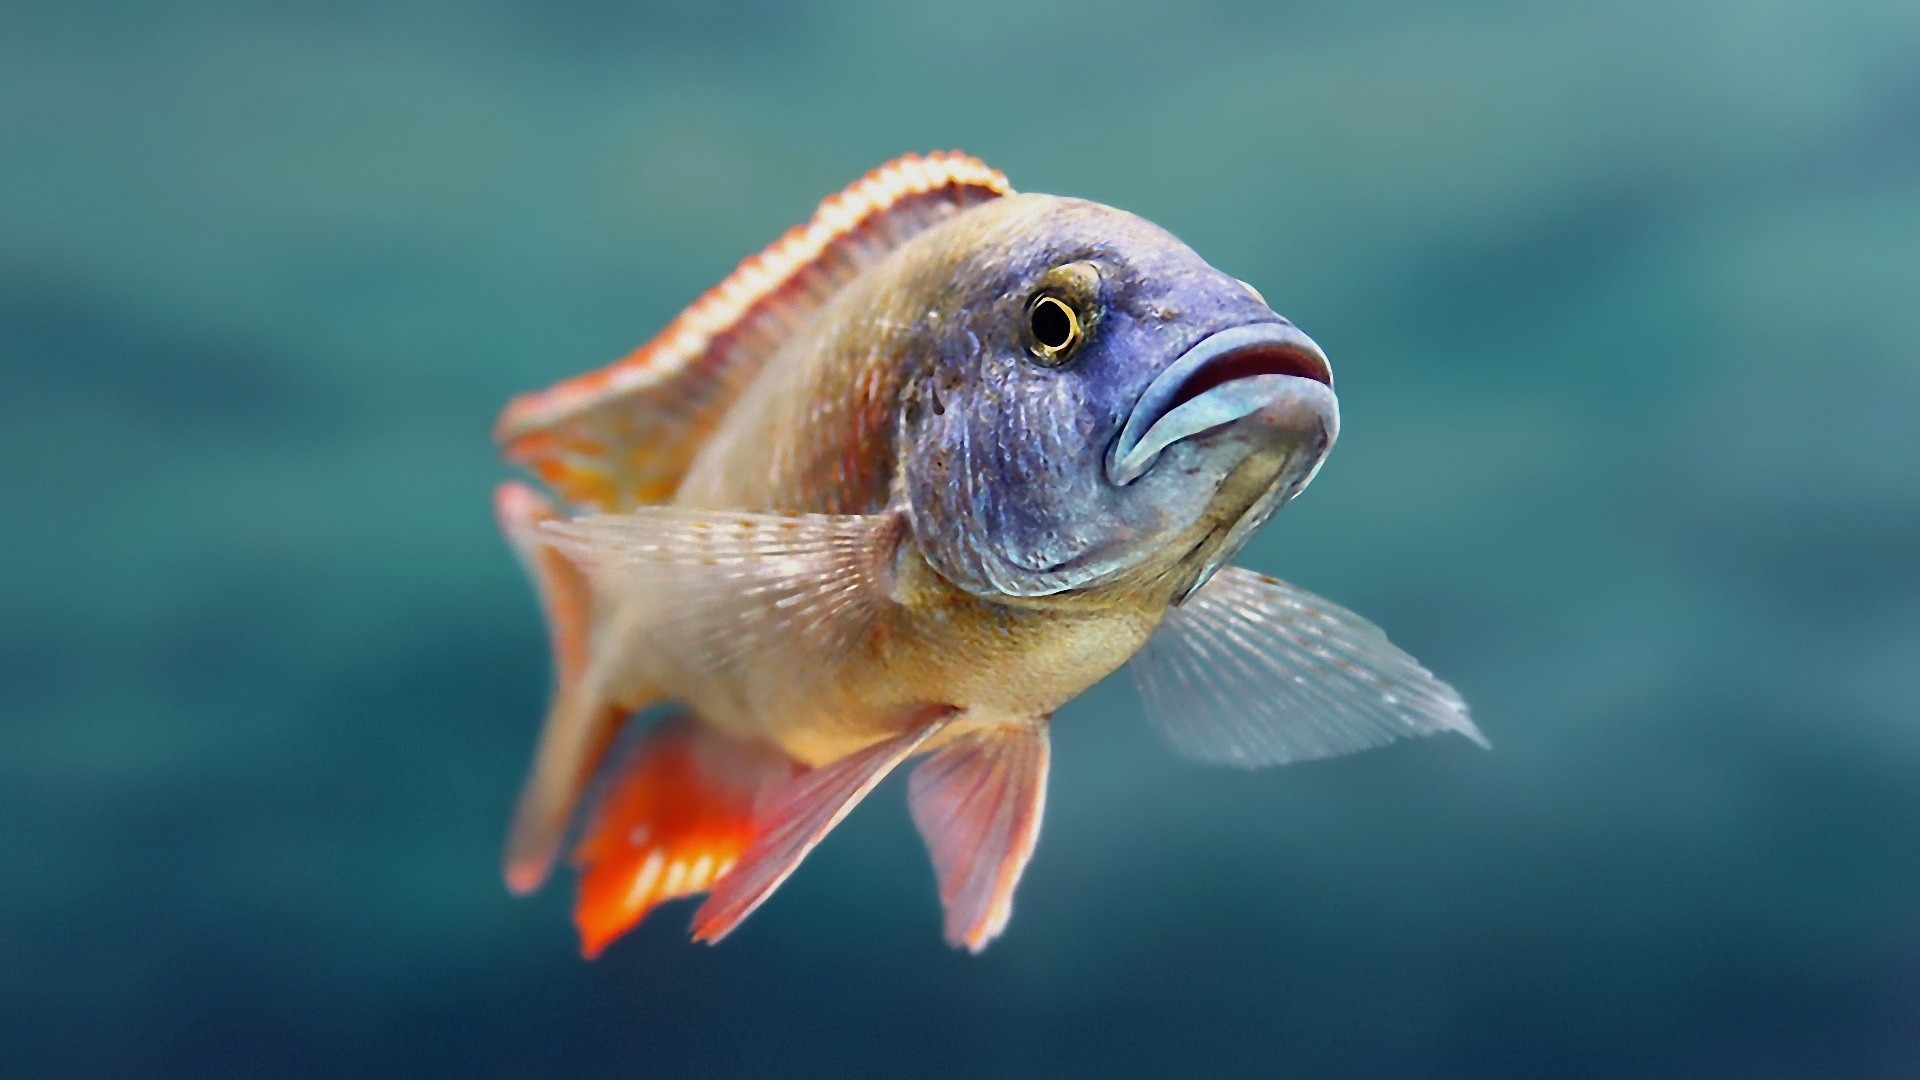 wallpaper widescreen high resolution fish